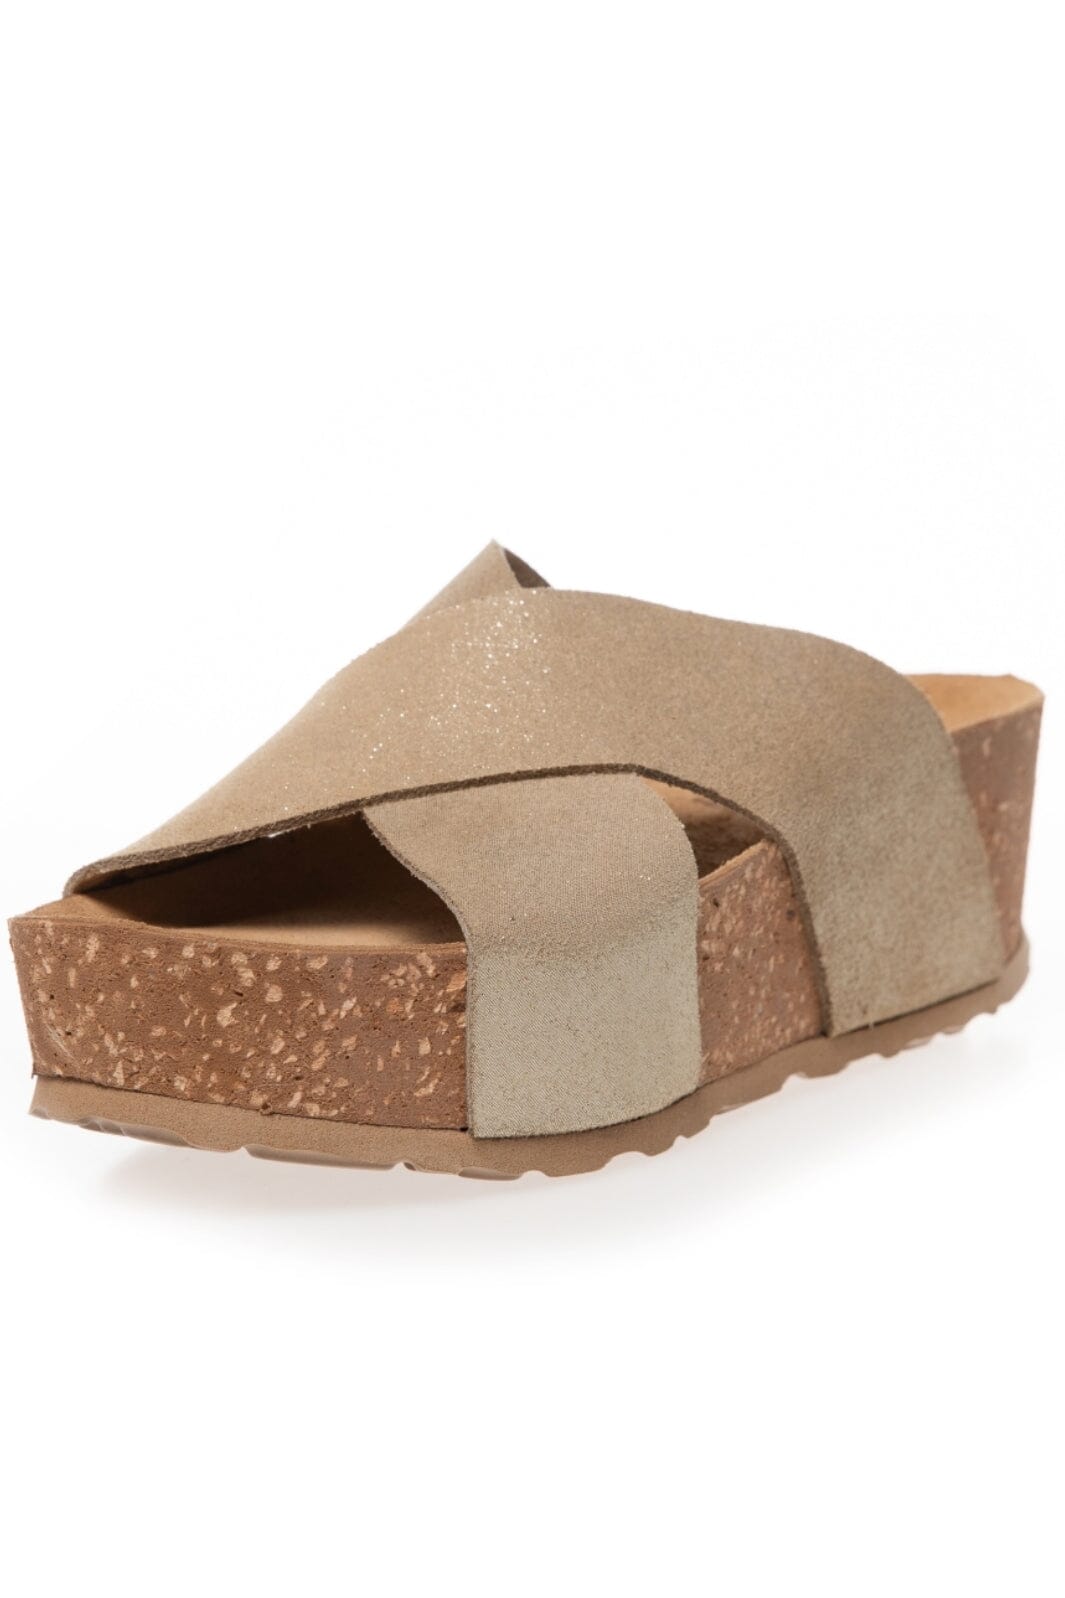 Copenhagen Shoes - My Ones - 0051 Gold Sandaler 